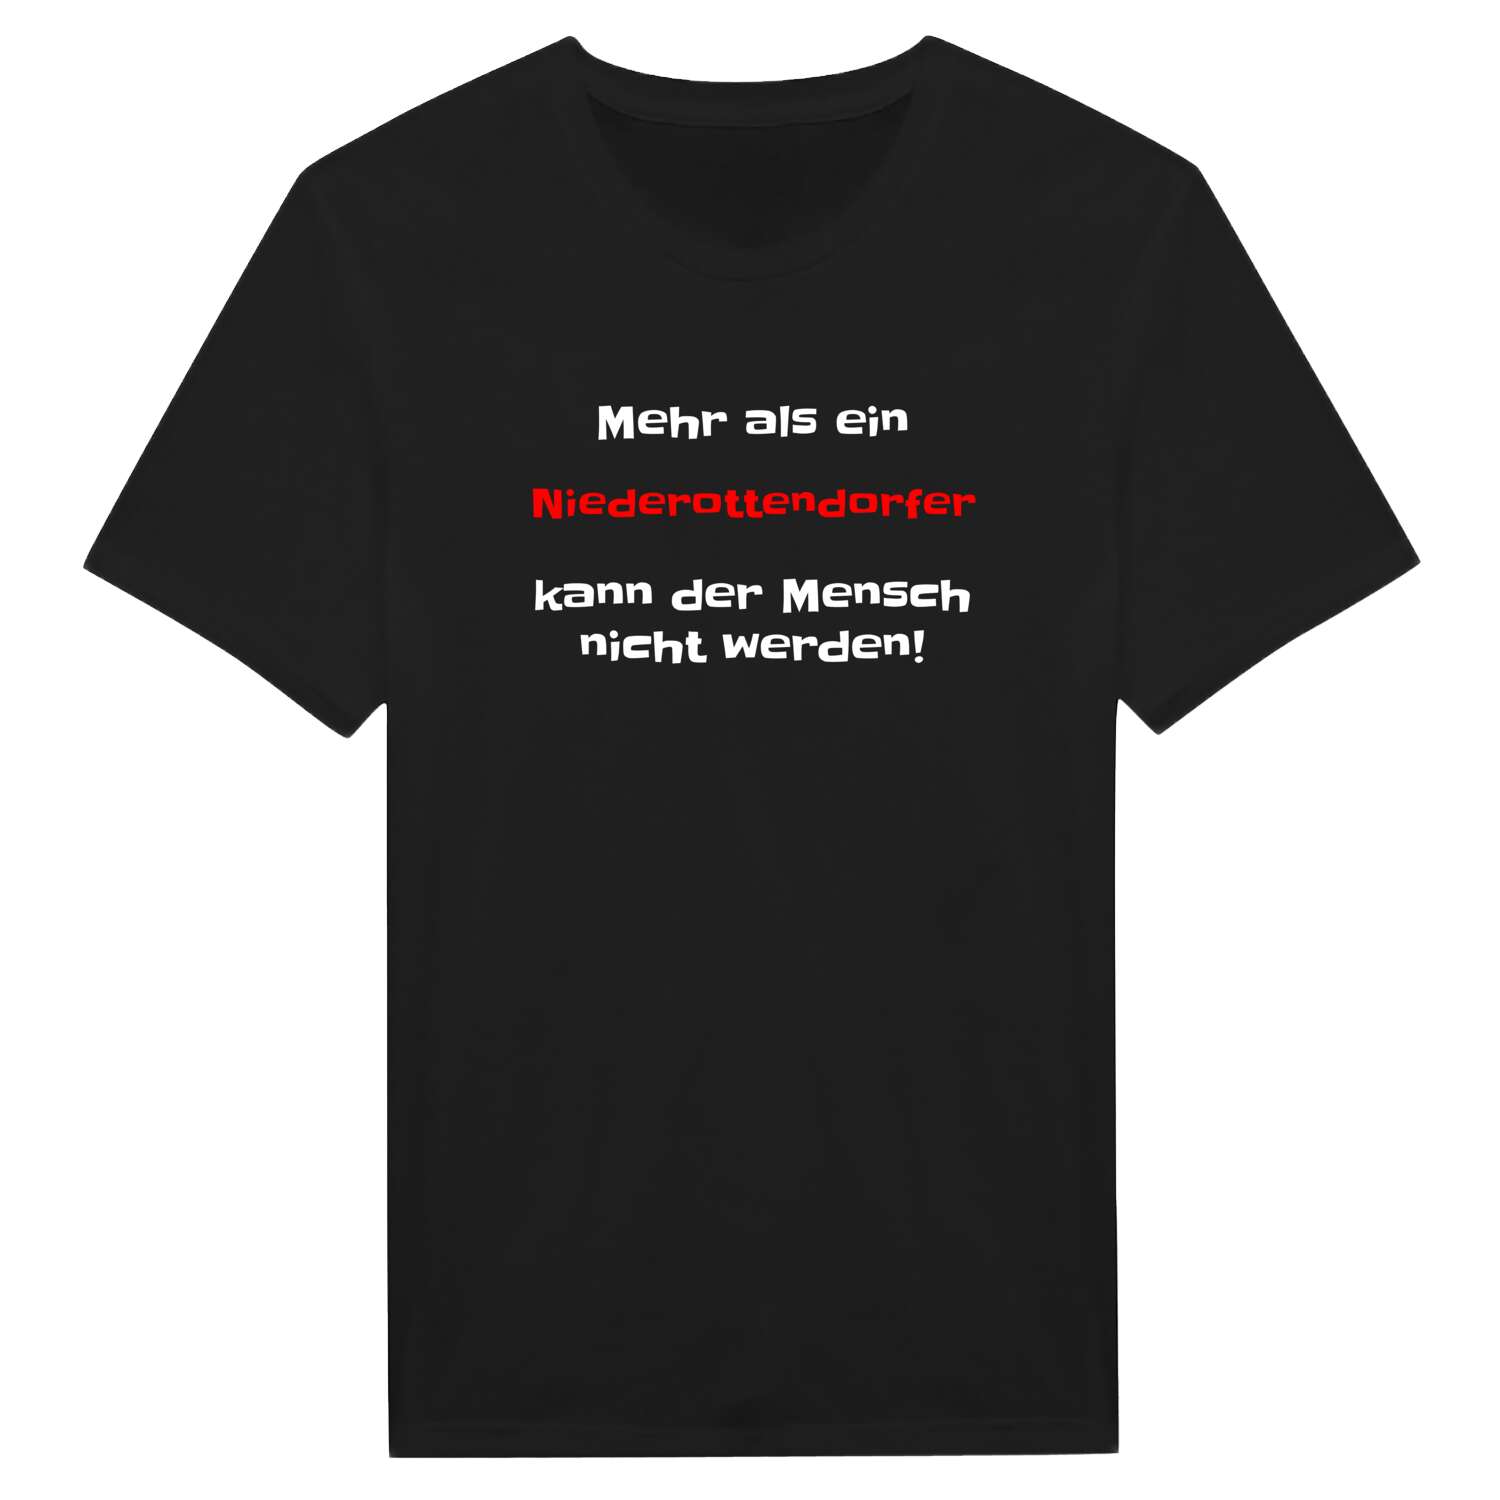 Niederottendorf T-Shirt »Mehr als ein«